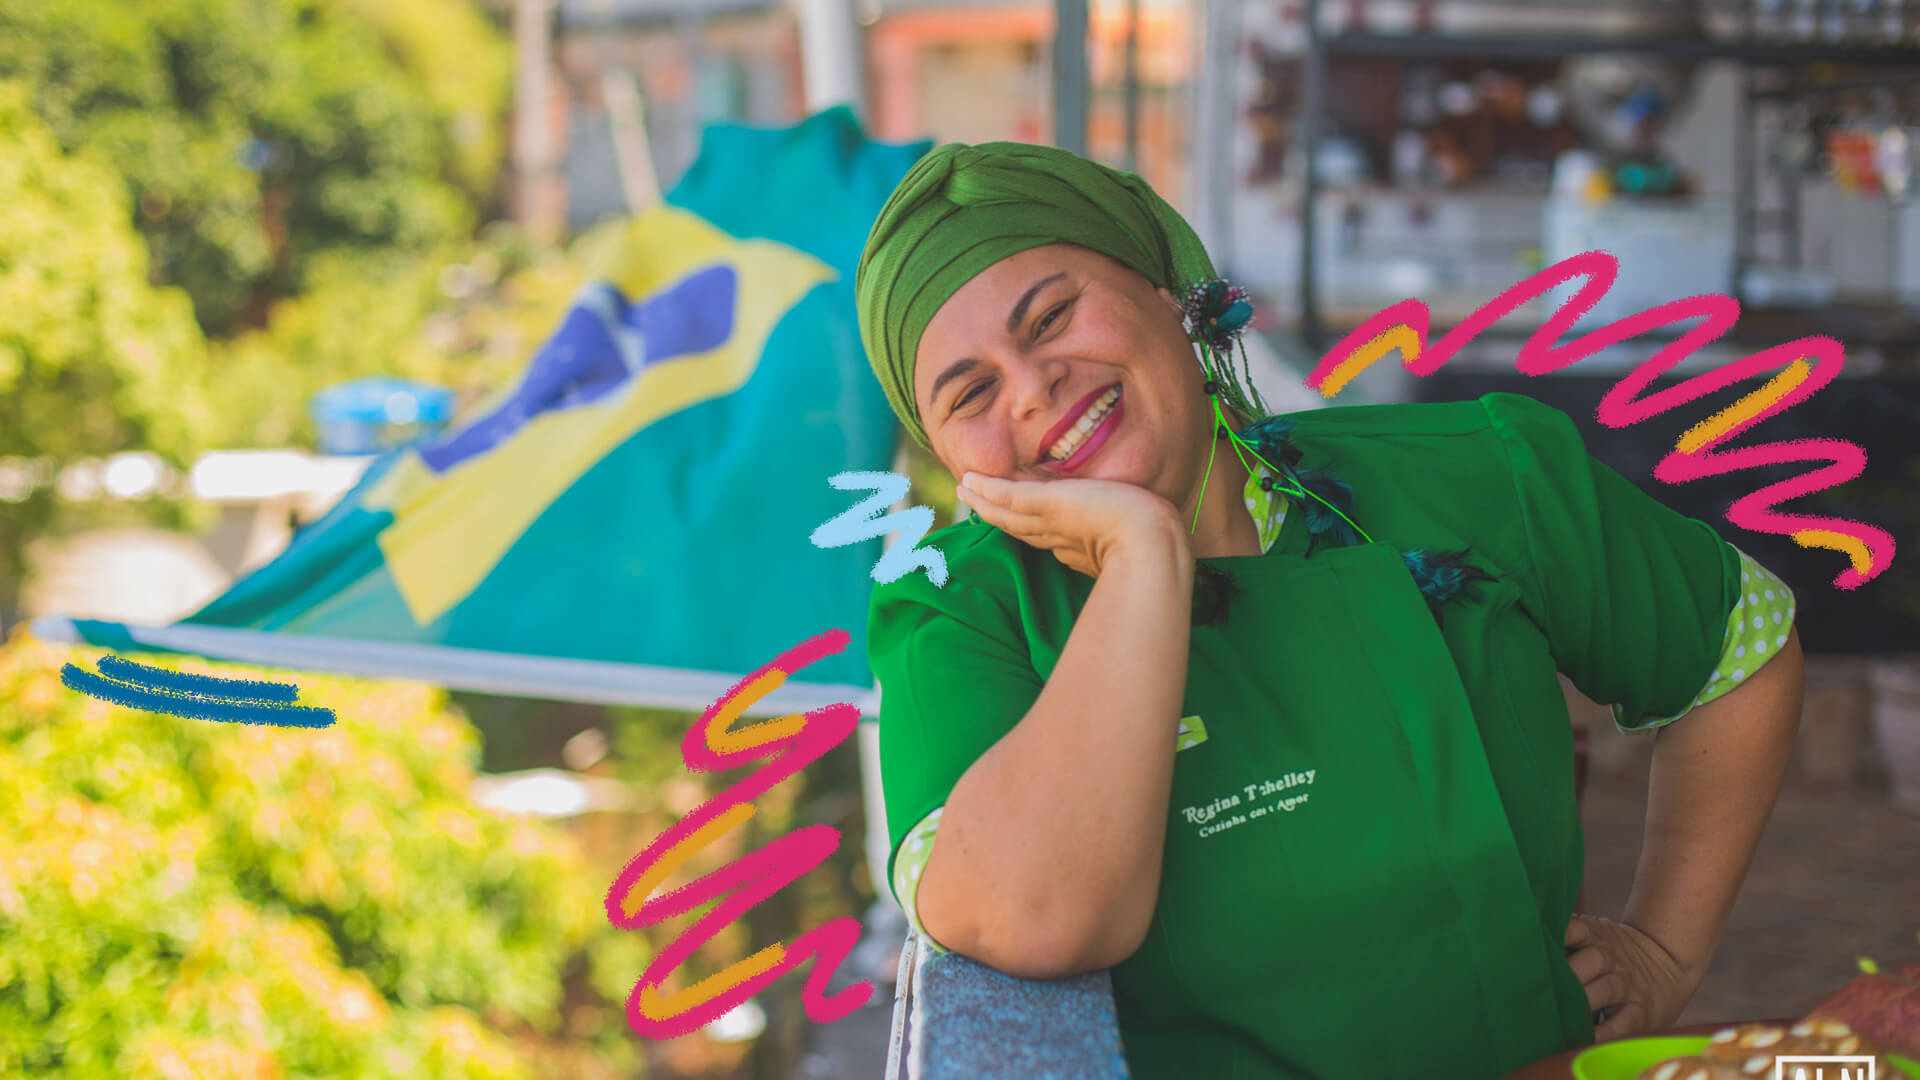 Imagem de uma mulher em cima de uma laje com um turbante na cabeça sorrindo. Atrás dela tem uma bandeira do Brasil pendurada. Há rabiscos coloridos como intervenção de arte na foto.